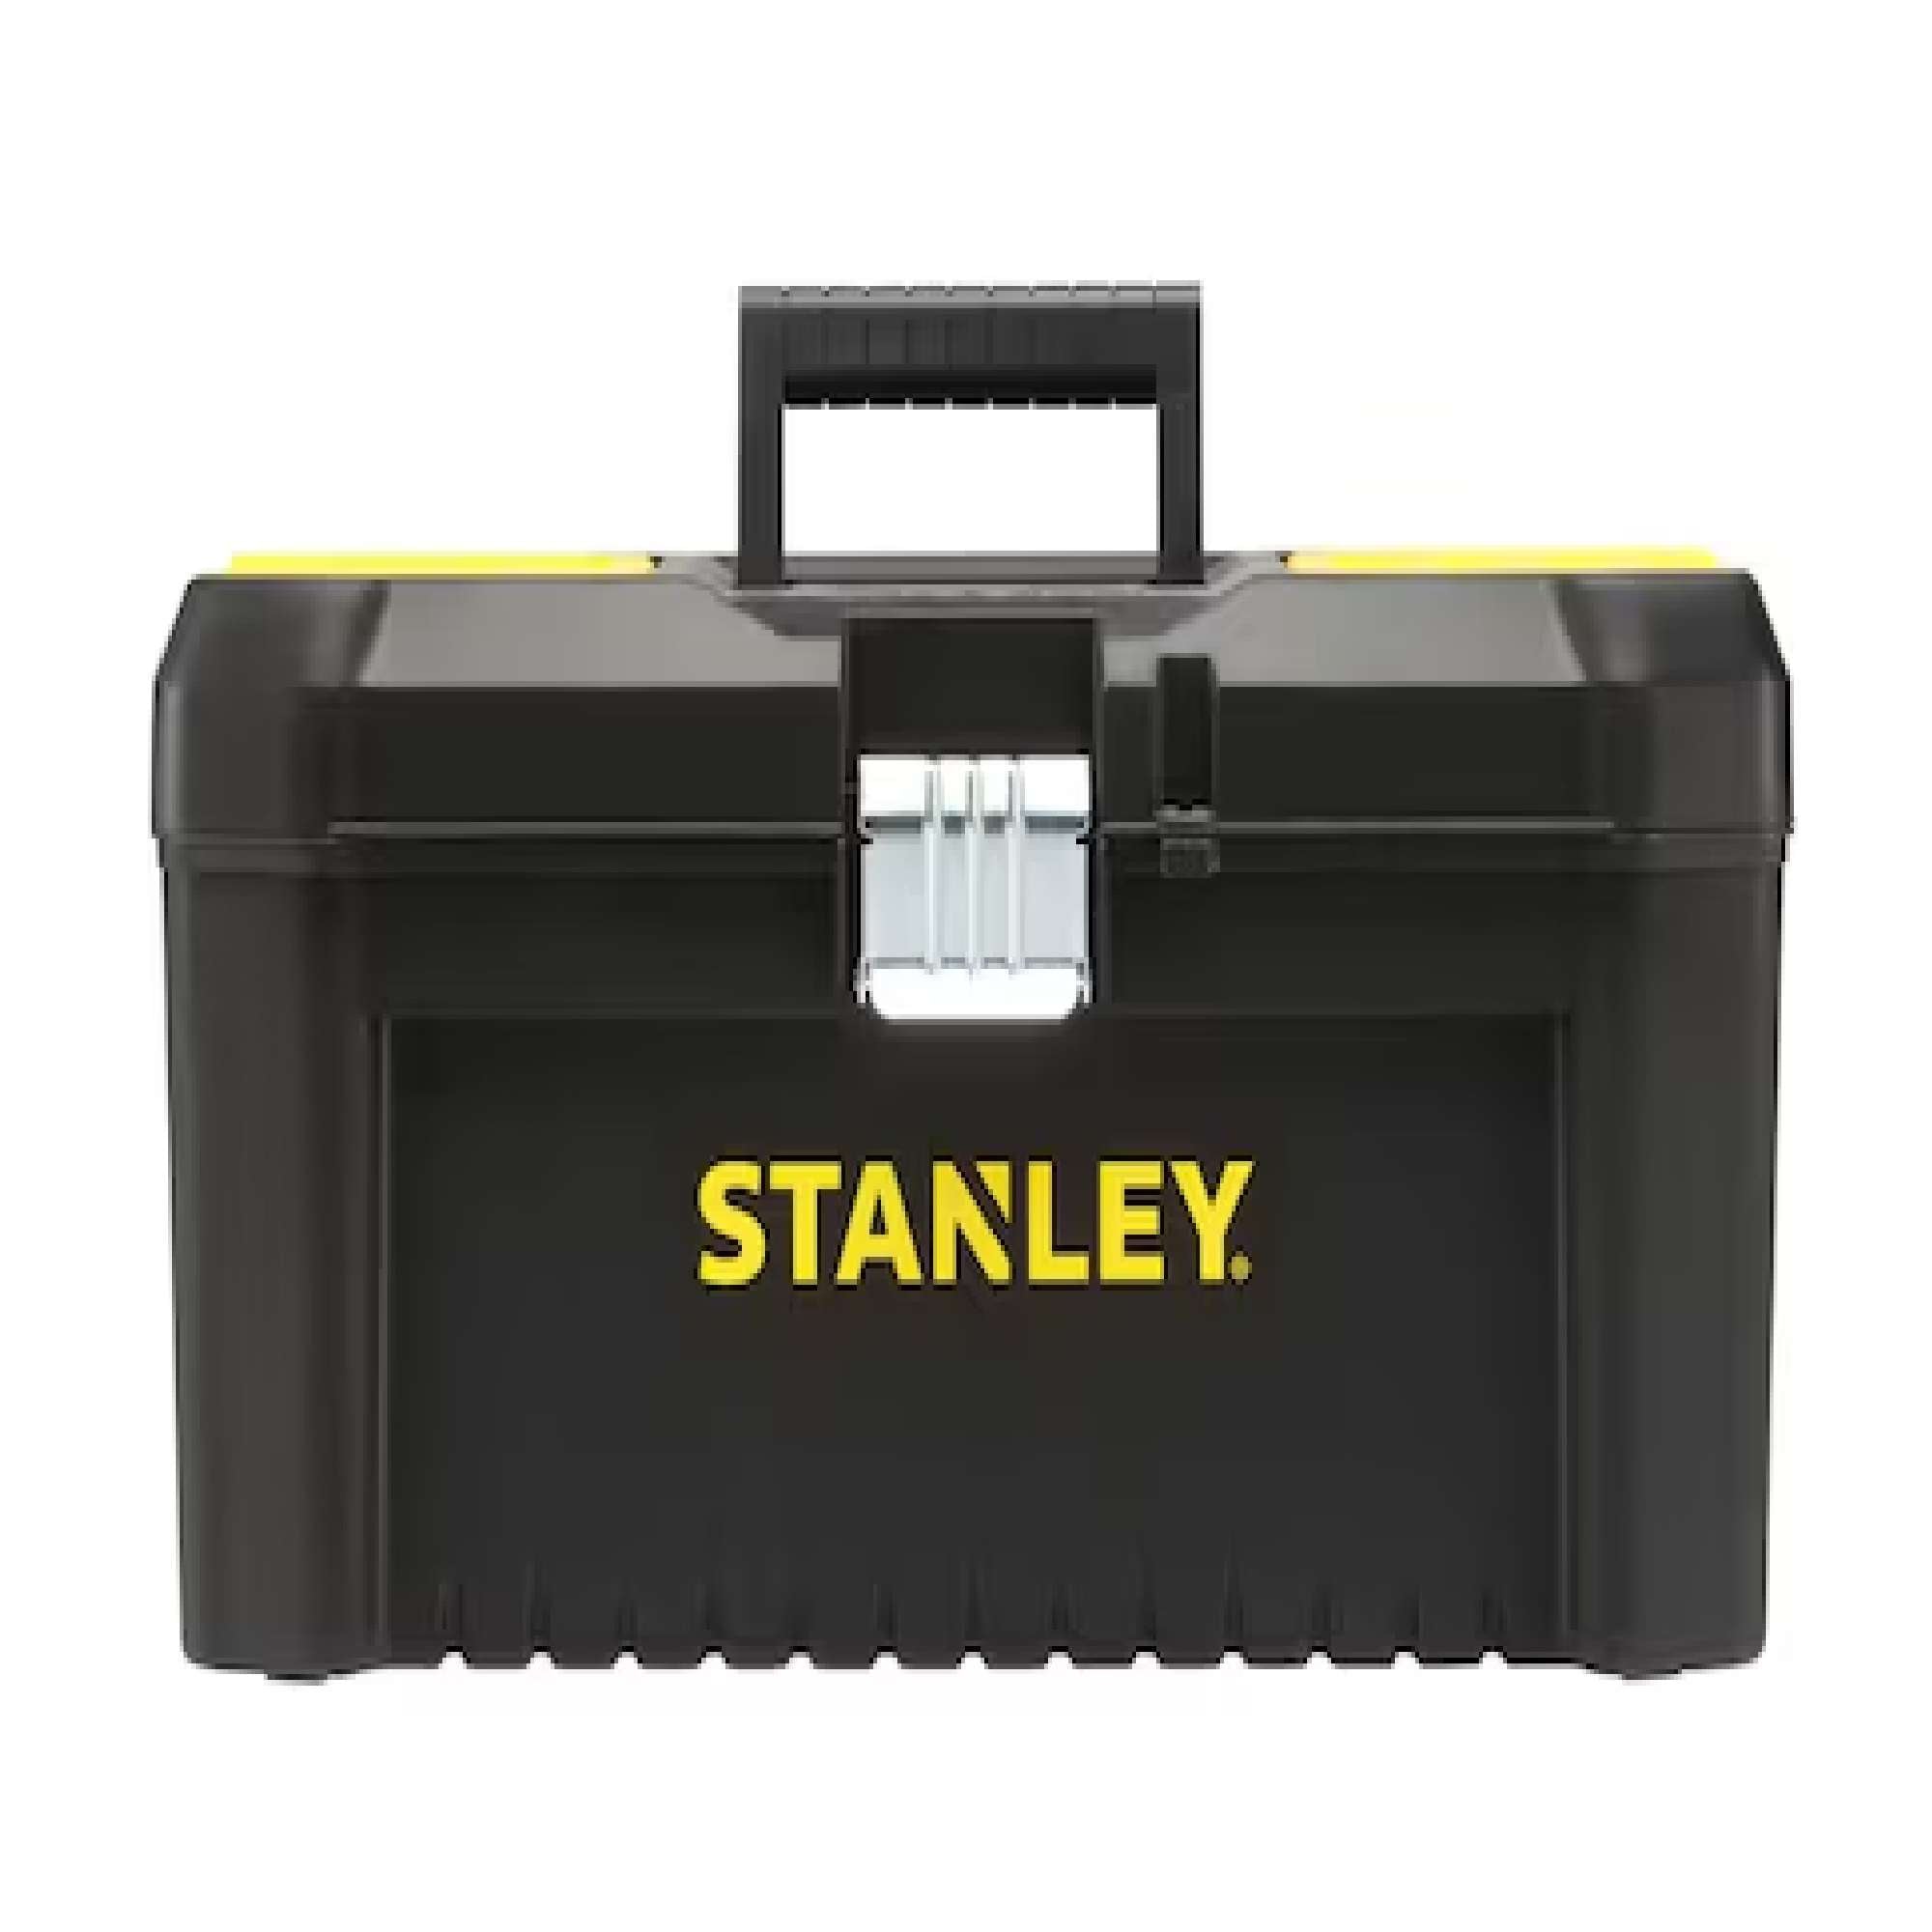 Essential toolbox, with metal hinges - Stanley STST1-75518